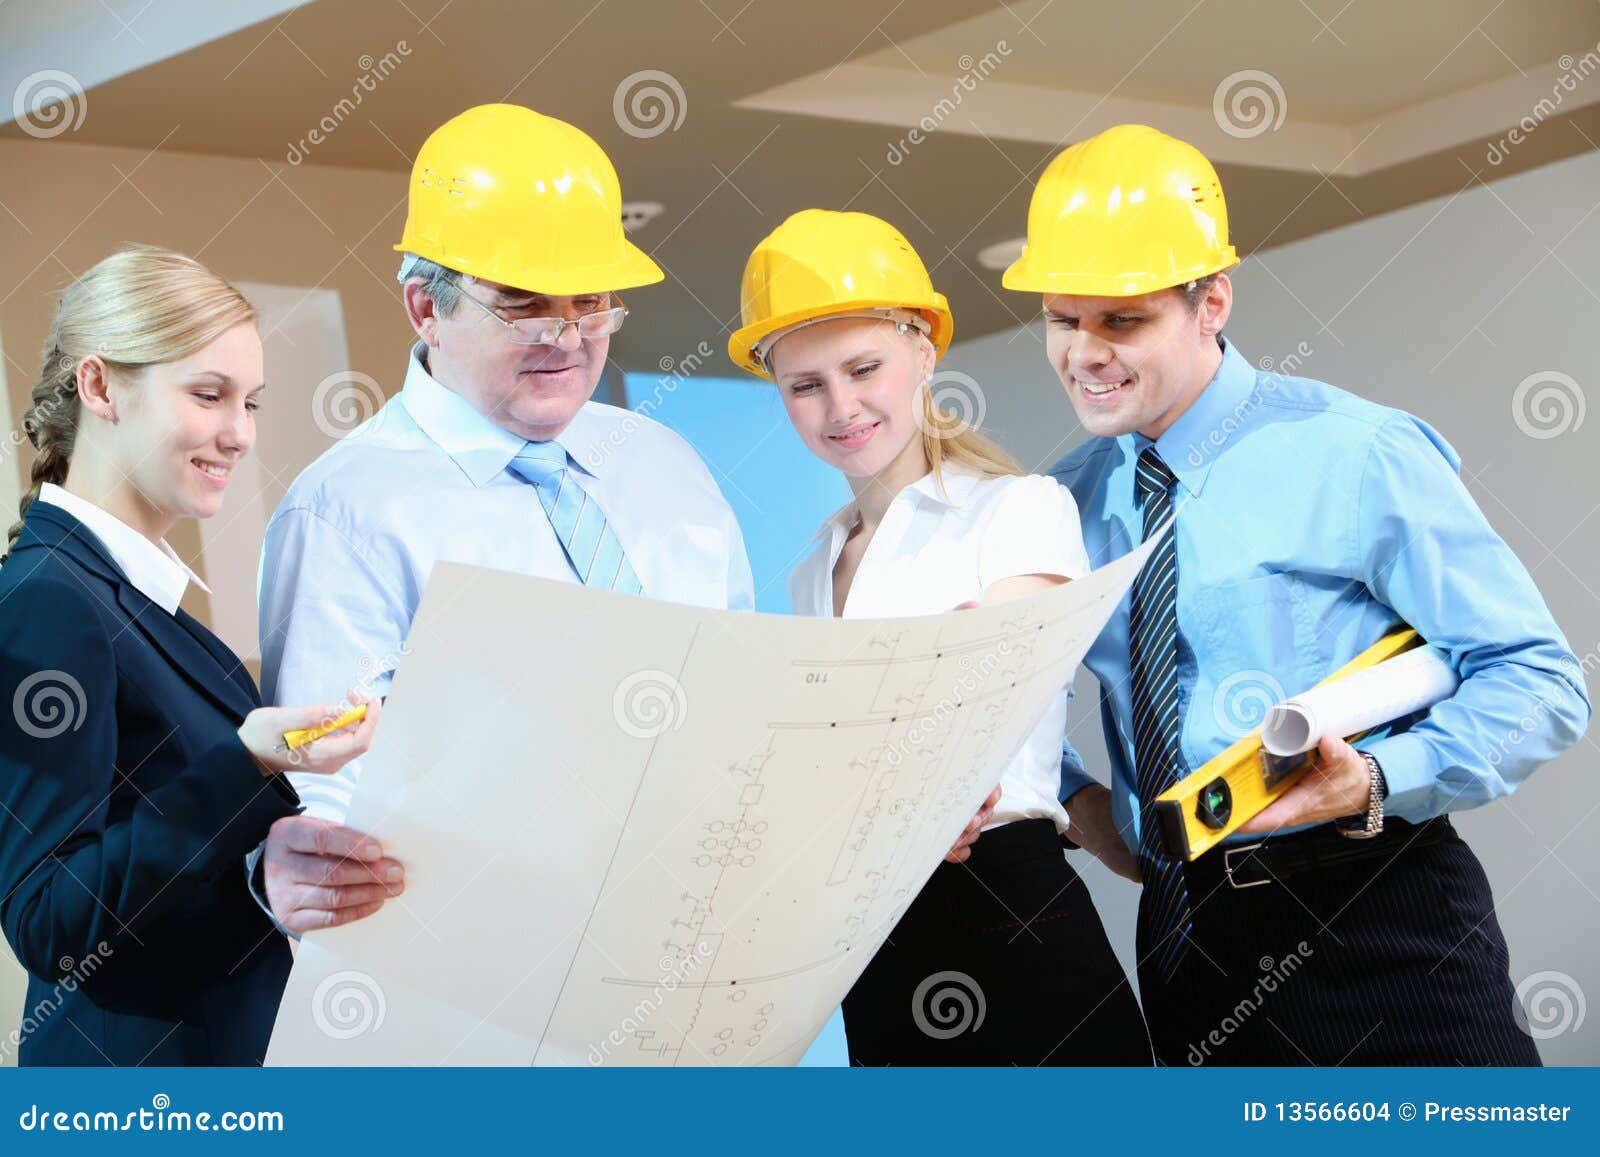 Ritratto del gruppo dell'operaio che esamina nuovo progetto di disegno